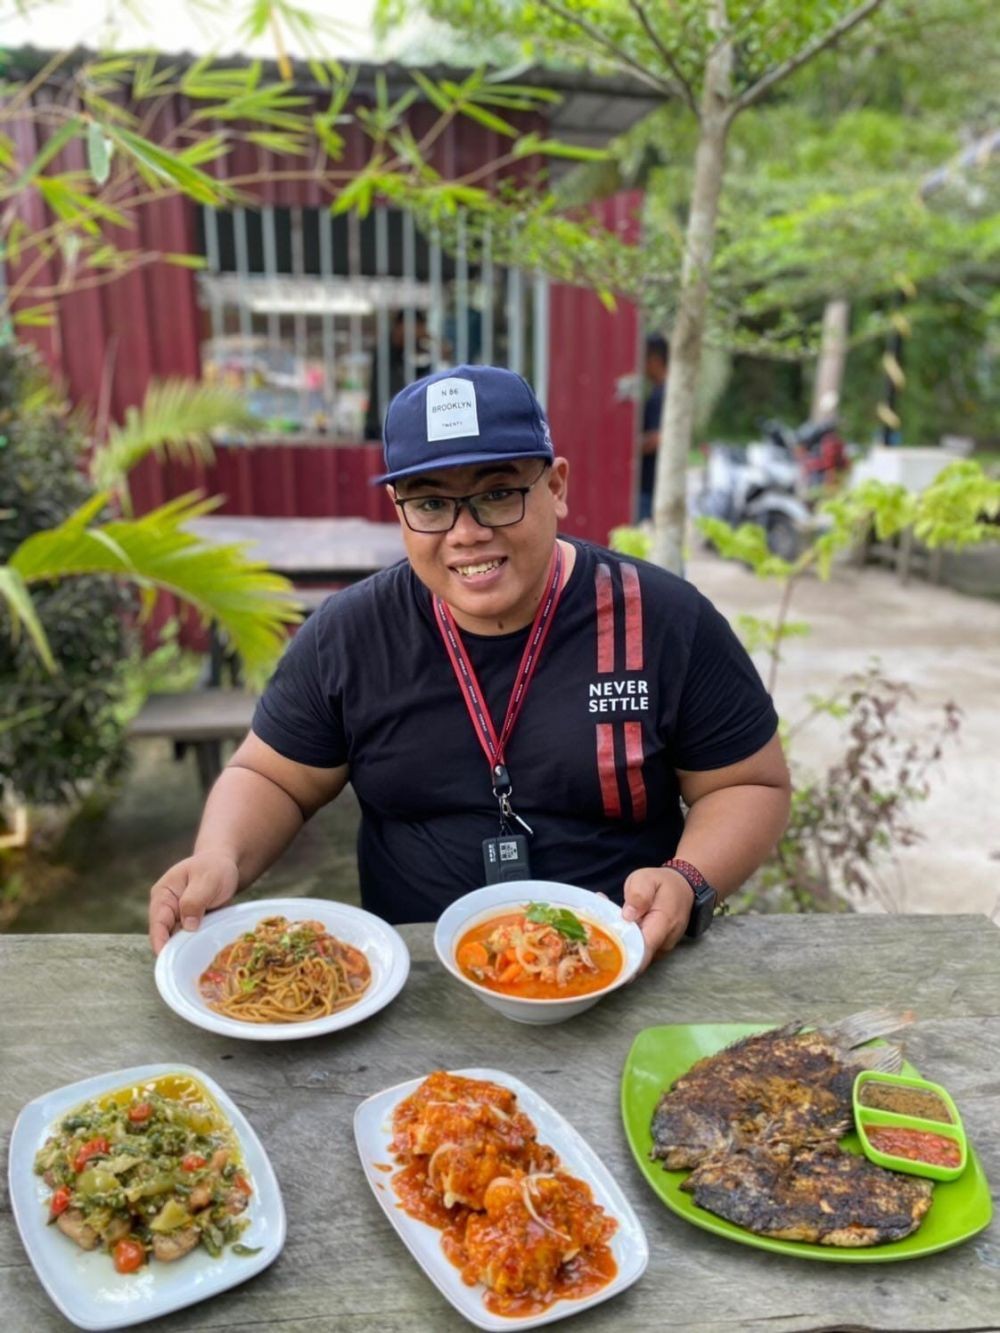 Bams Marpaung, Konten Kreator yang Angkat Kuliner dan Wisata Asahan 